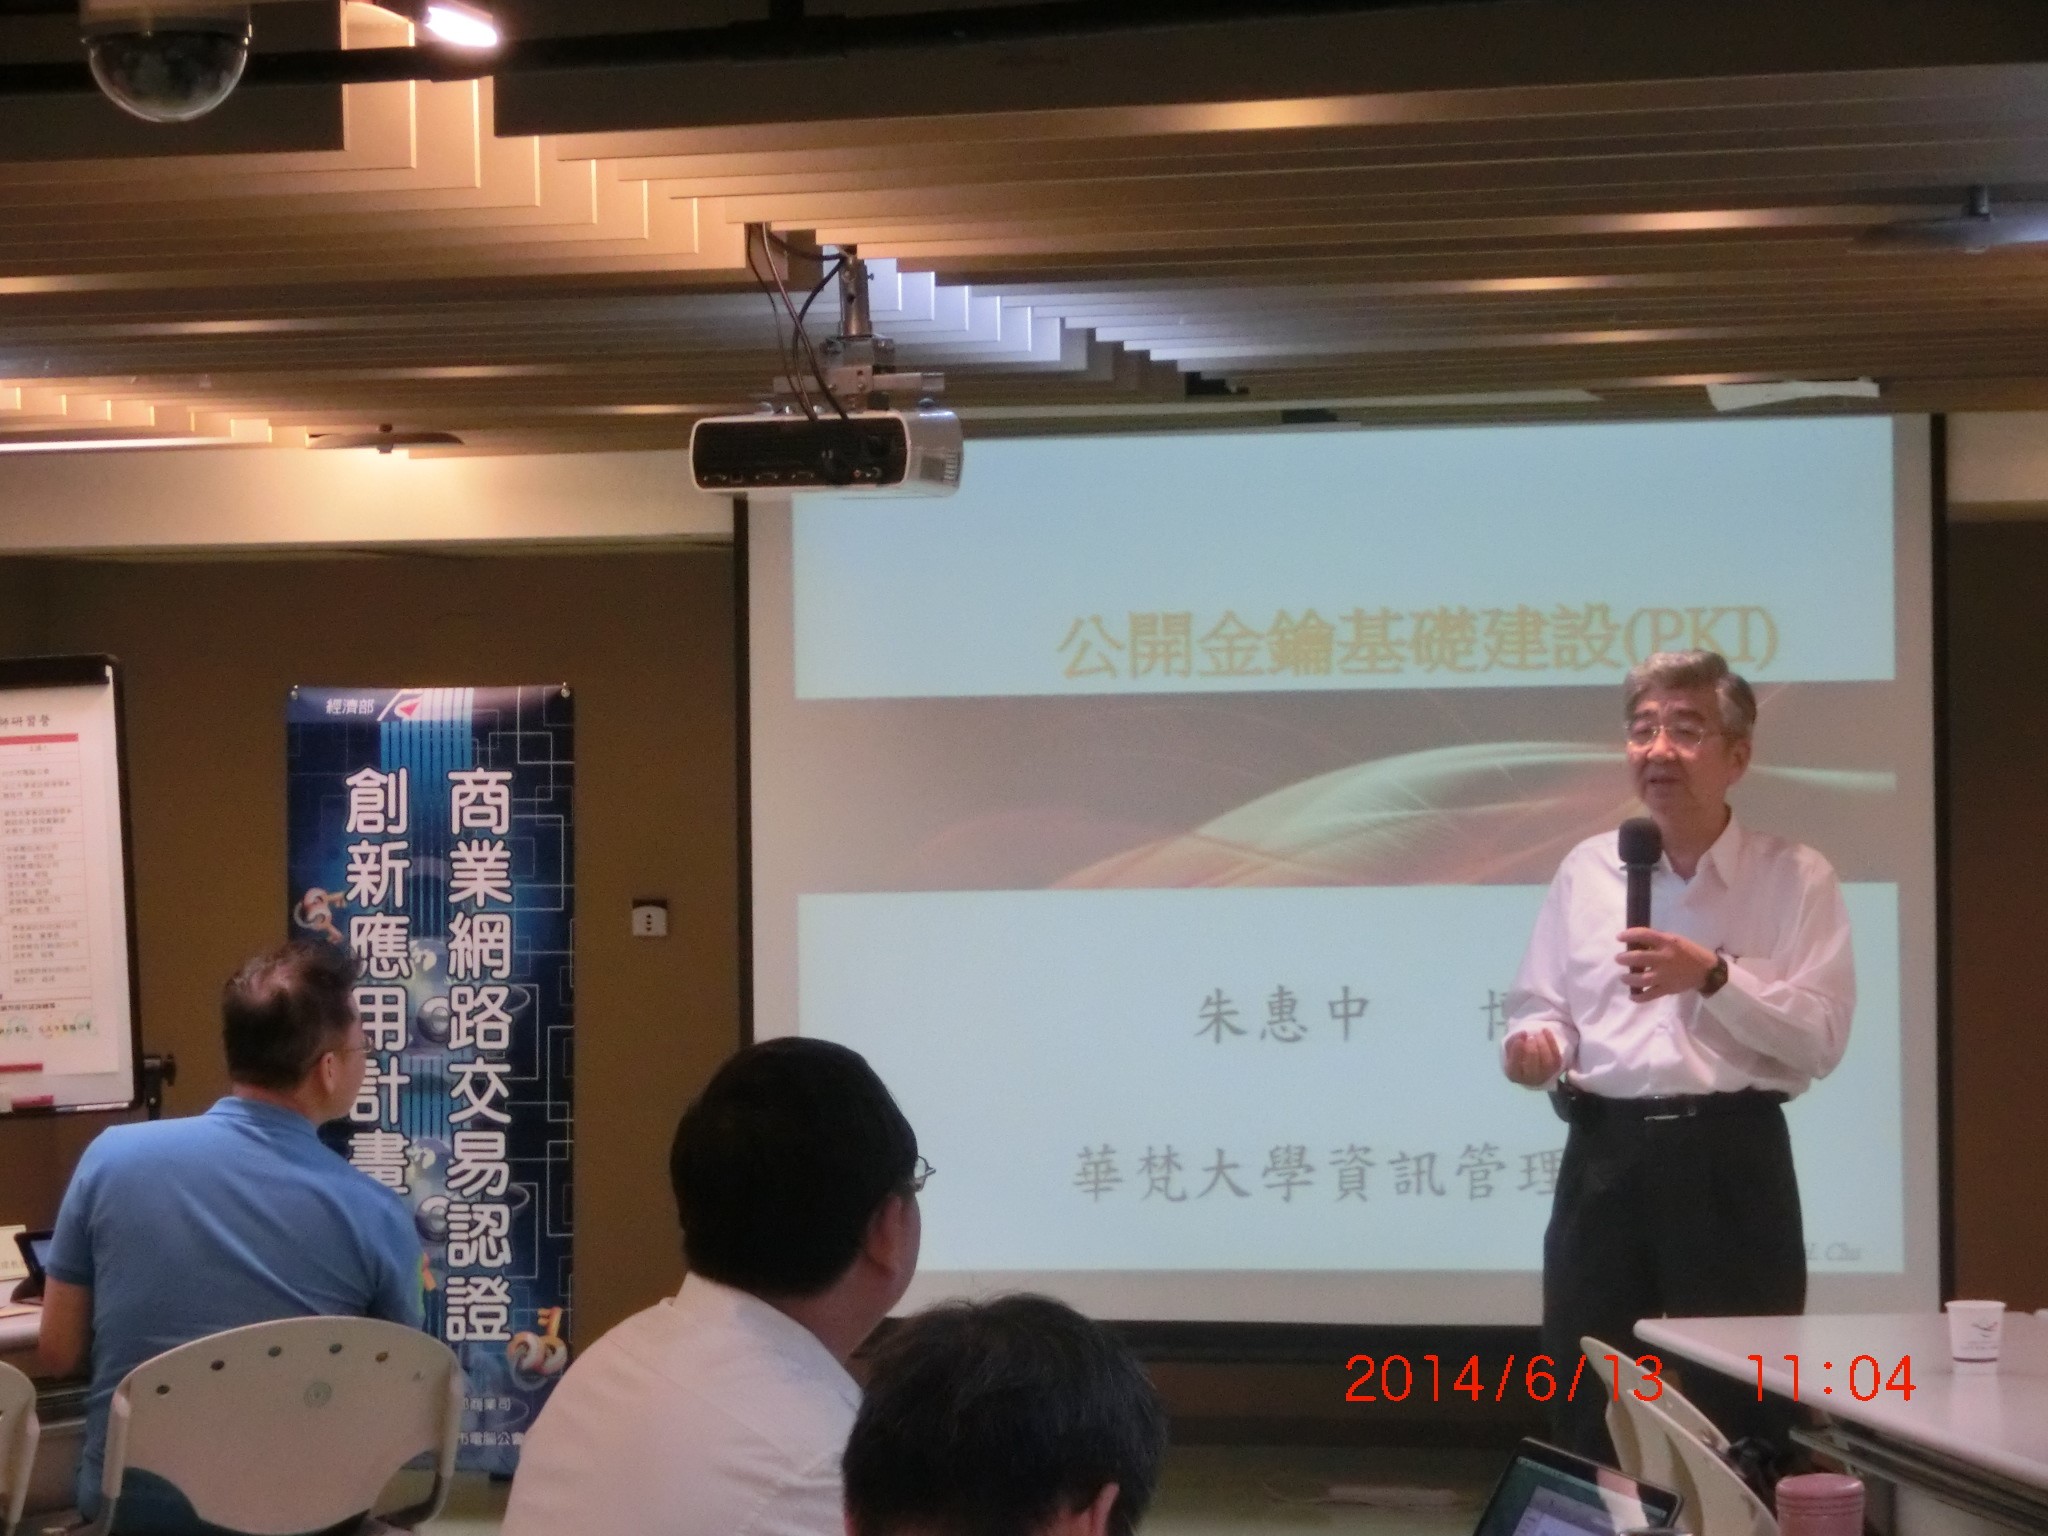 華梵大學朱惠中教授說明公開金鑰基礎建設